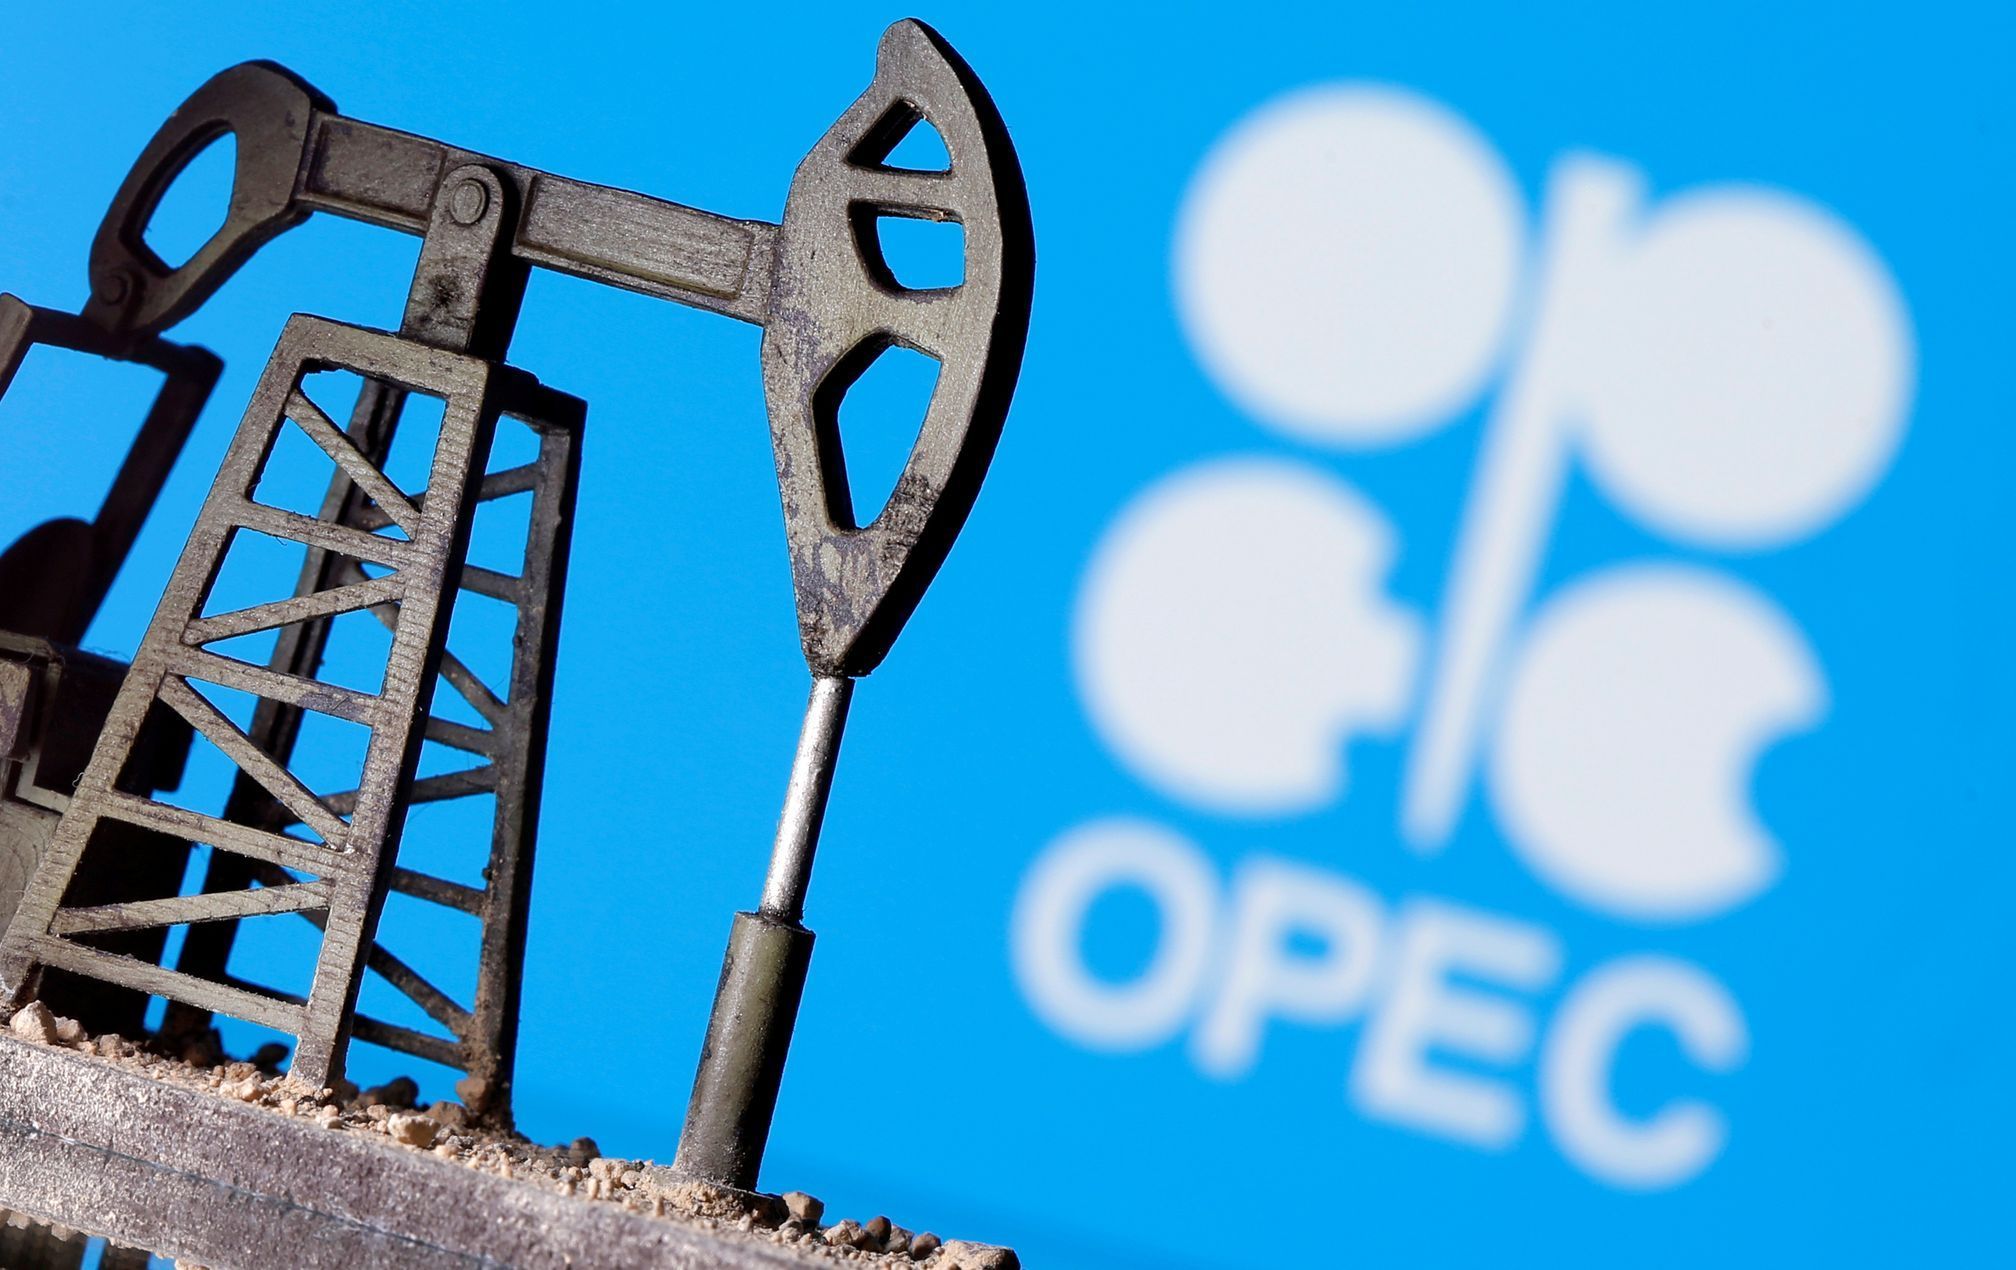 Jednorázové užití / Fotogalerie / 60 let od vzniku ropného kartelu OPEC / O